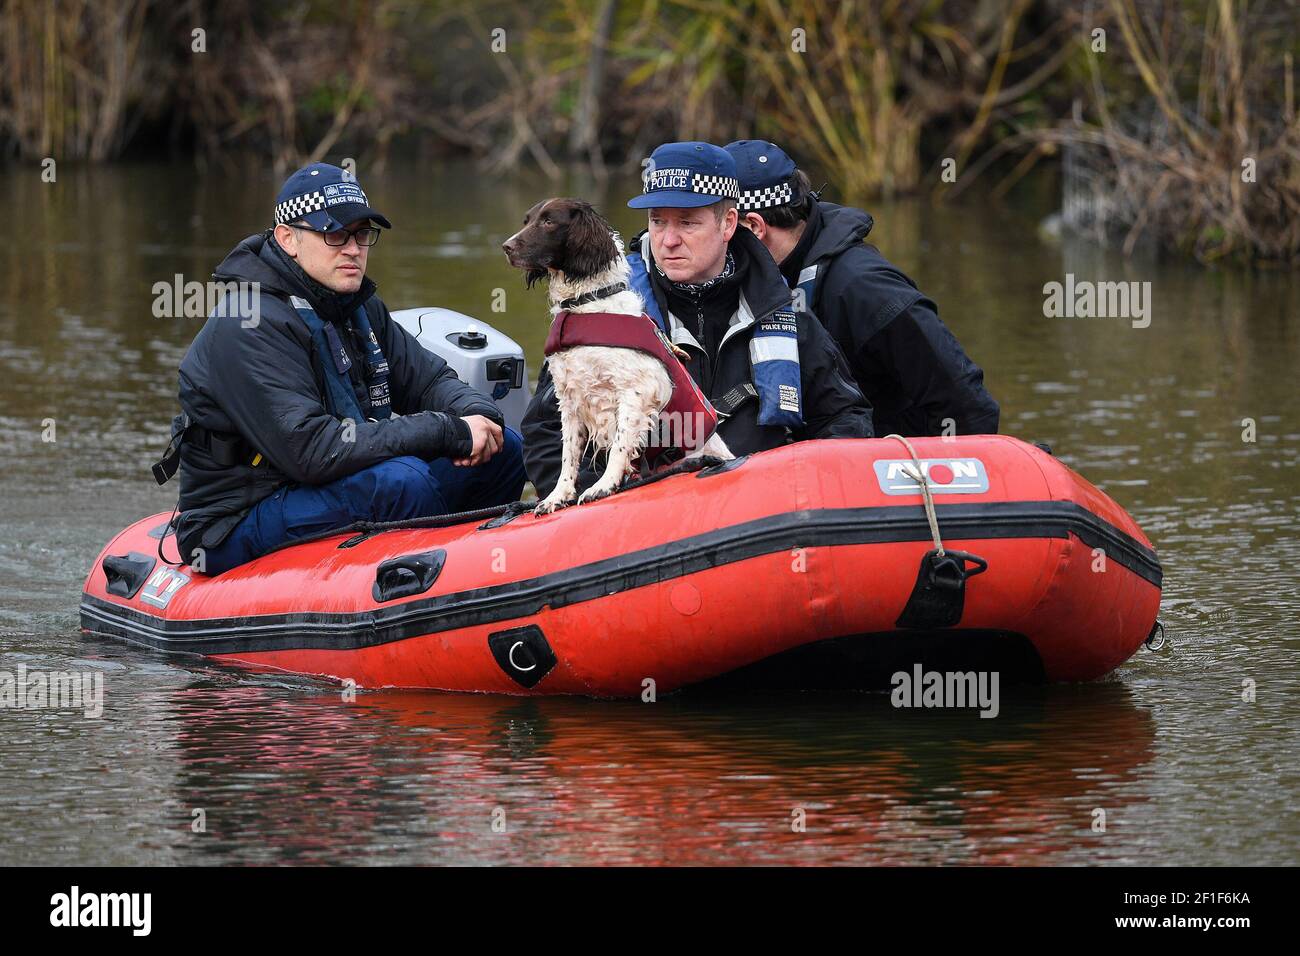 La police dans un bateau avec un chien renifleur recherche Mount Pond sur Clapham Common pour la femme disparue Sarah Everard, 33 ans, qui a quitté la maison d'un ami à Clapham, dans le sud de Londres, mercredi soir vers 21h et a commencé à marcher jusqu'à Brixton. Date de la photo: Lundi 8 mars 2021. Banque D'Images